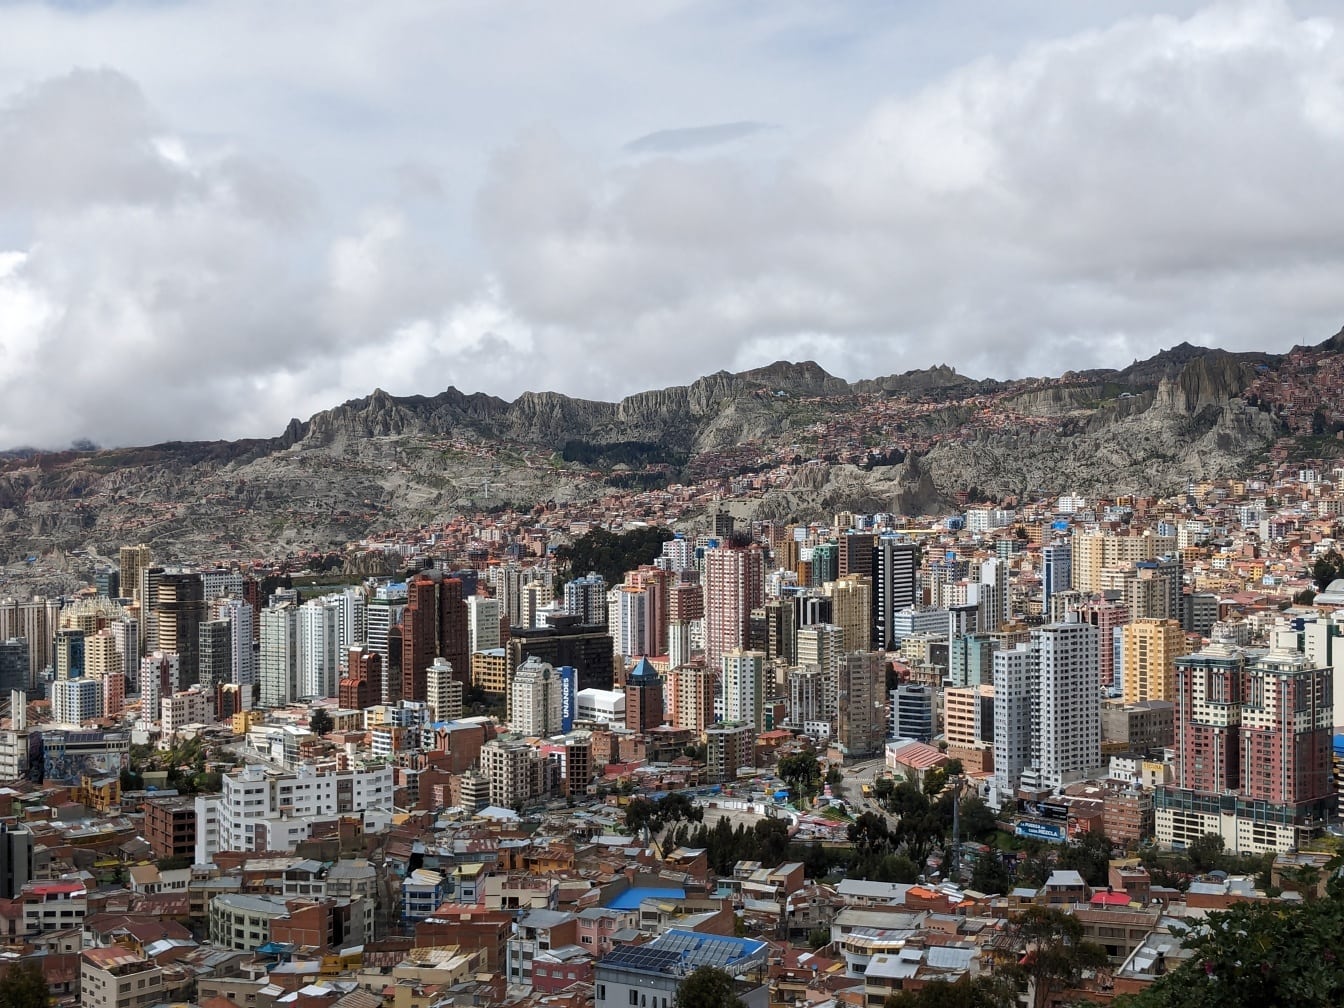 Vista panoramica della moderna metropoli in Bolivia